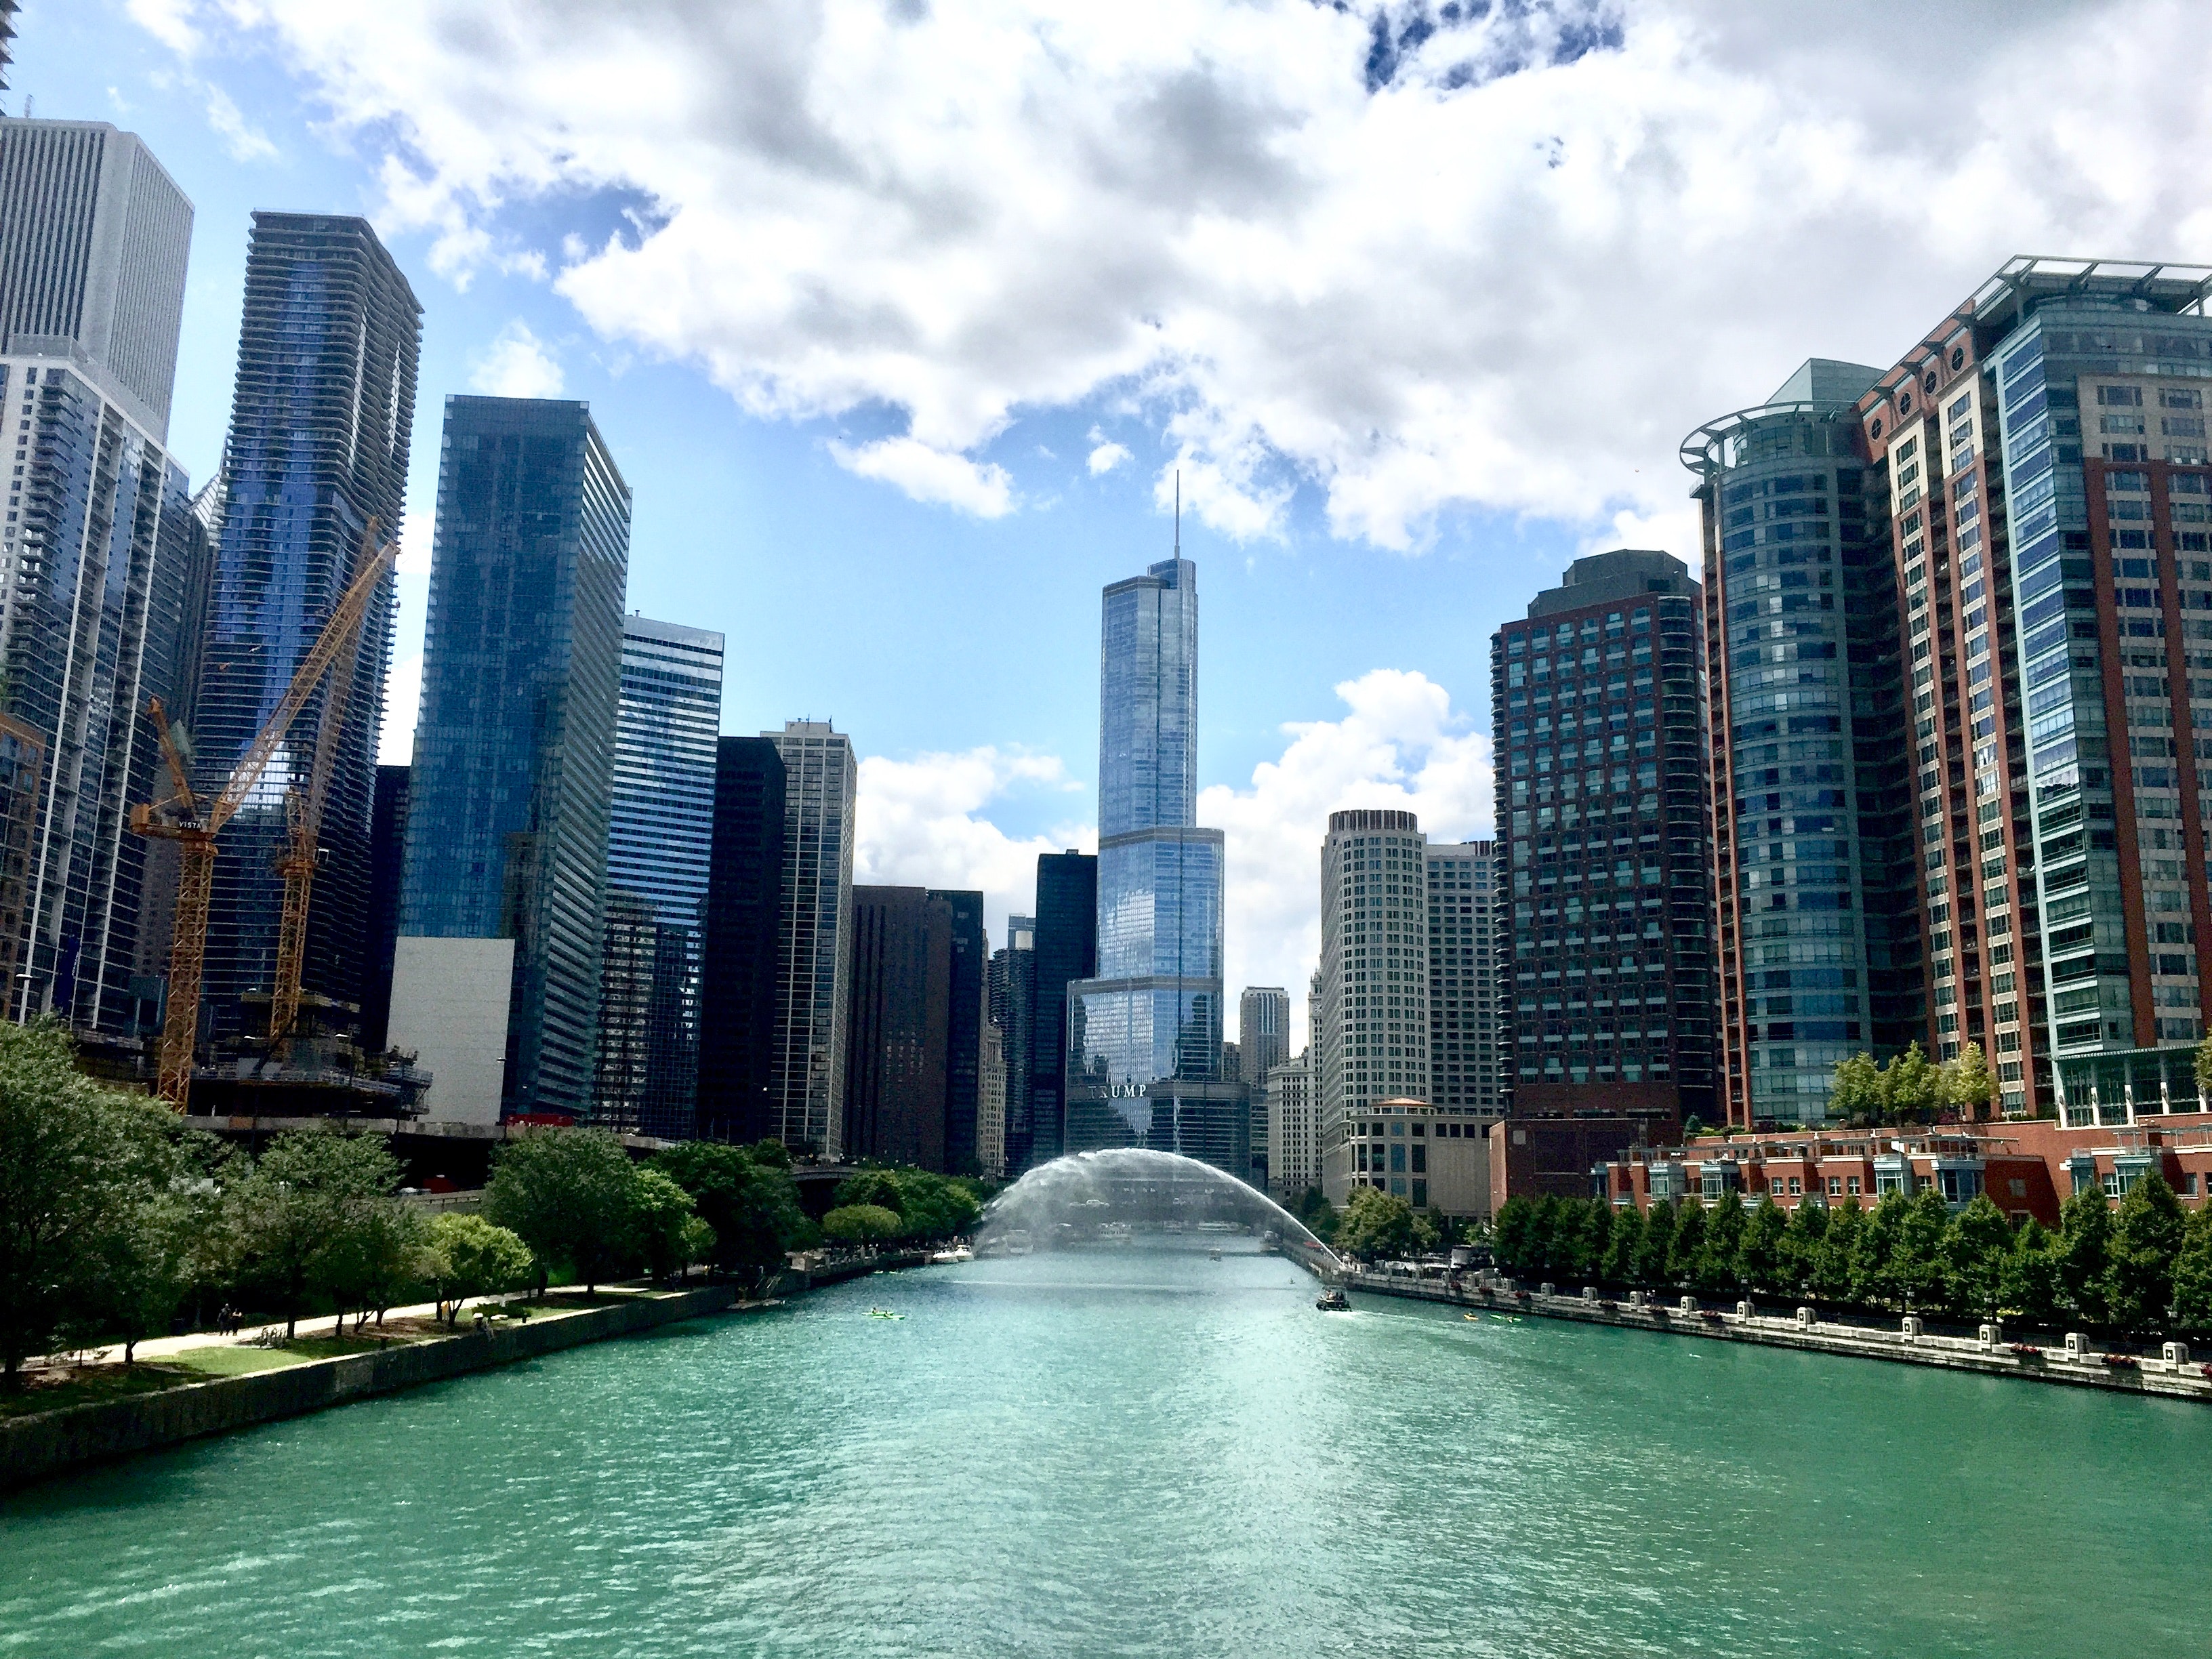 Ciudad de Chicago, Illinois. (Cortesía de Pexels)